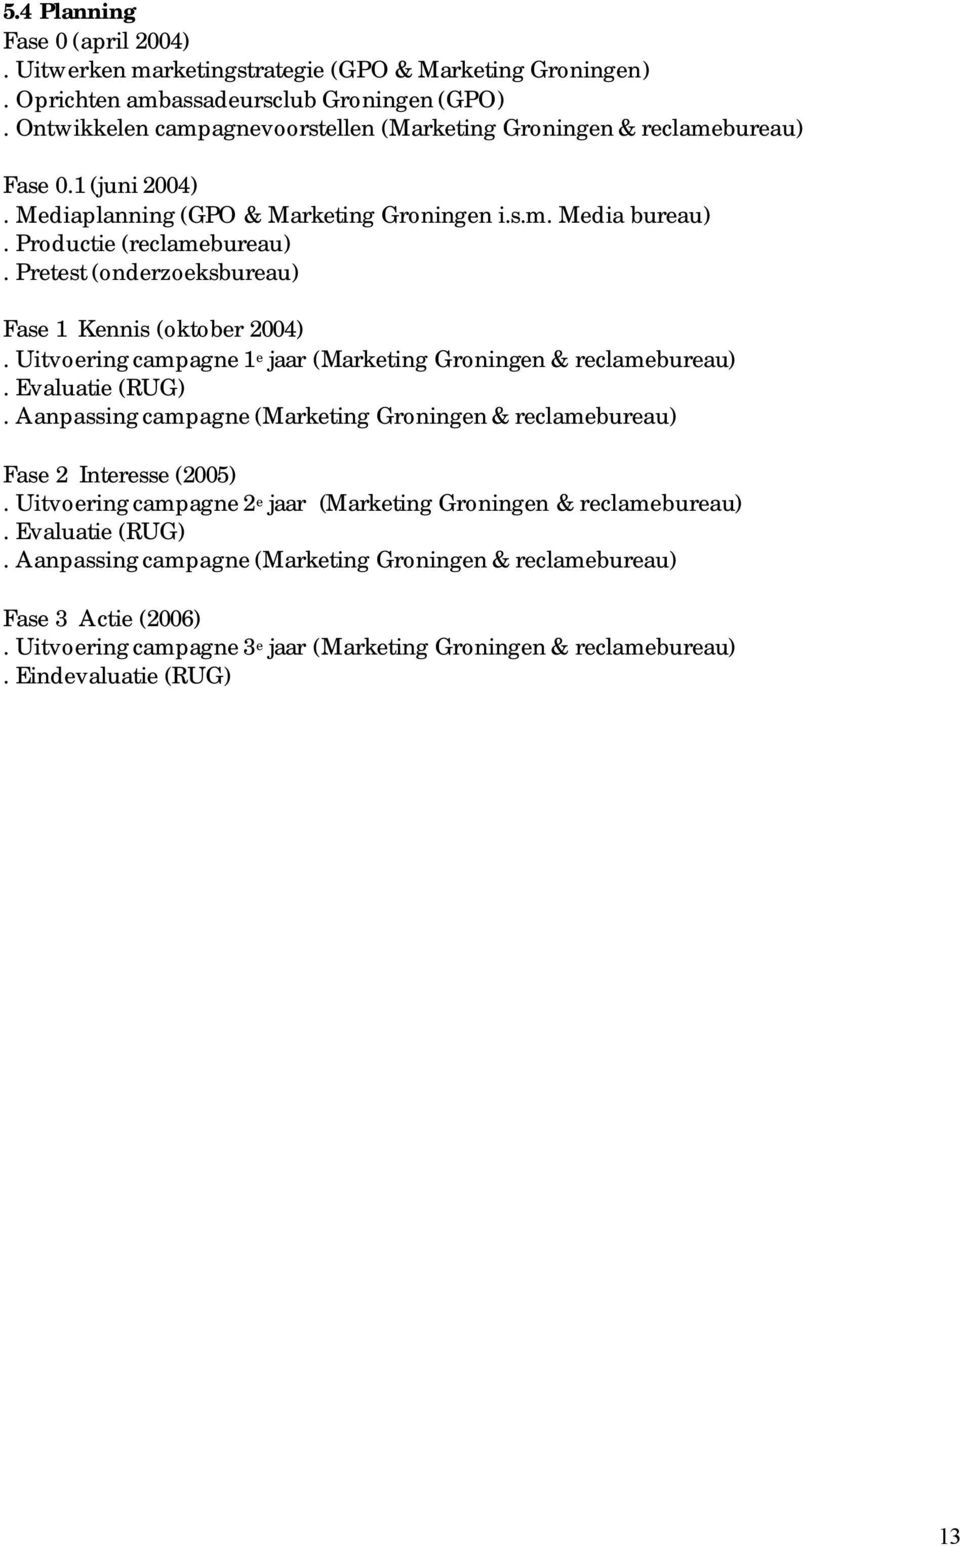 Pretest (onderzoeksbureau) Fase 1 Kennis (oktober 2004). Uitvoering campagne 1 e jaar (Marketing Groningen & reclamebureau). Evaluatie (RUG).